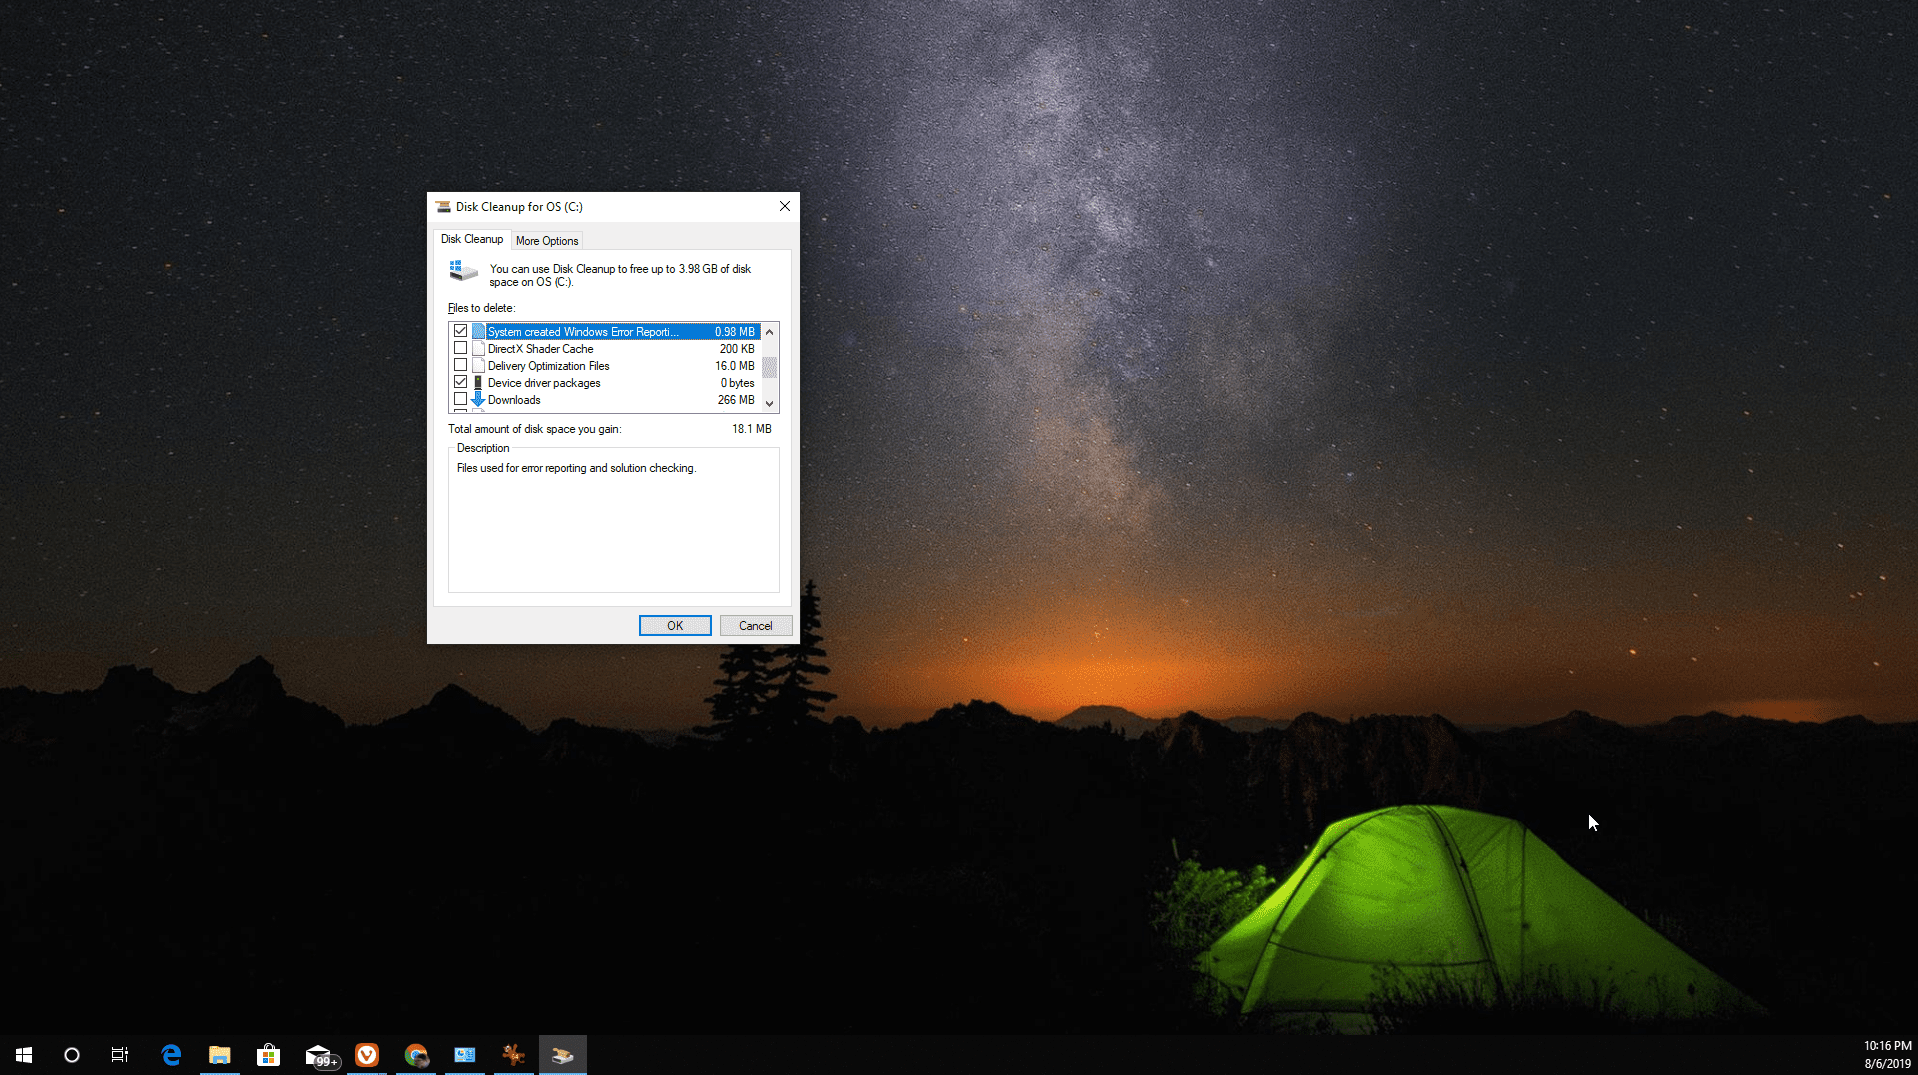 Снимок экрана использования Disk Cleanup для очистки файла дампа памяти